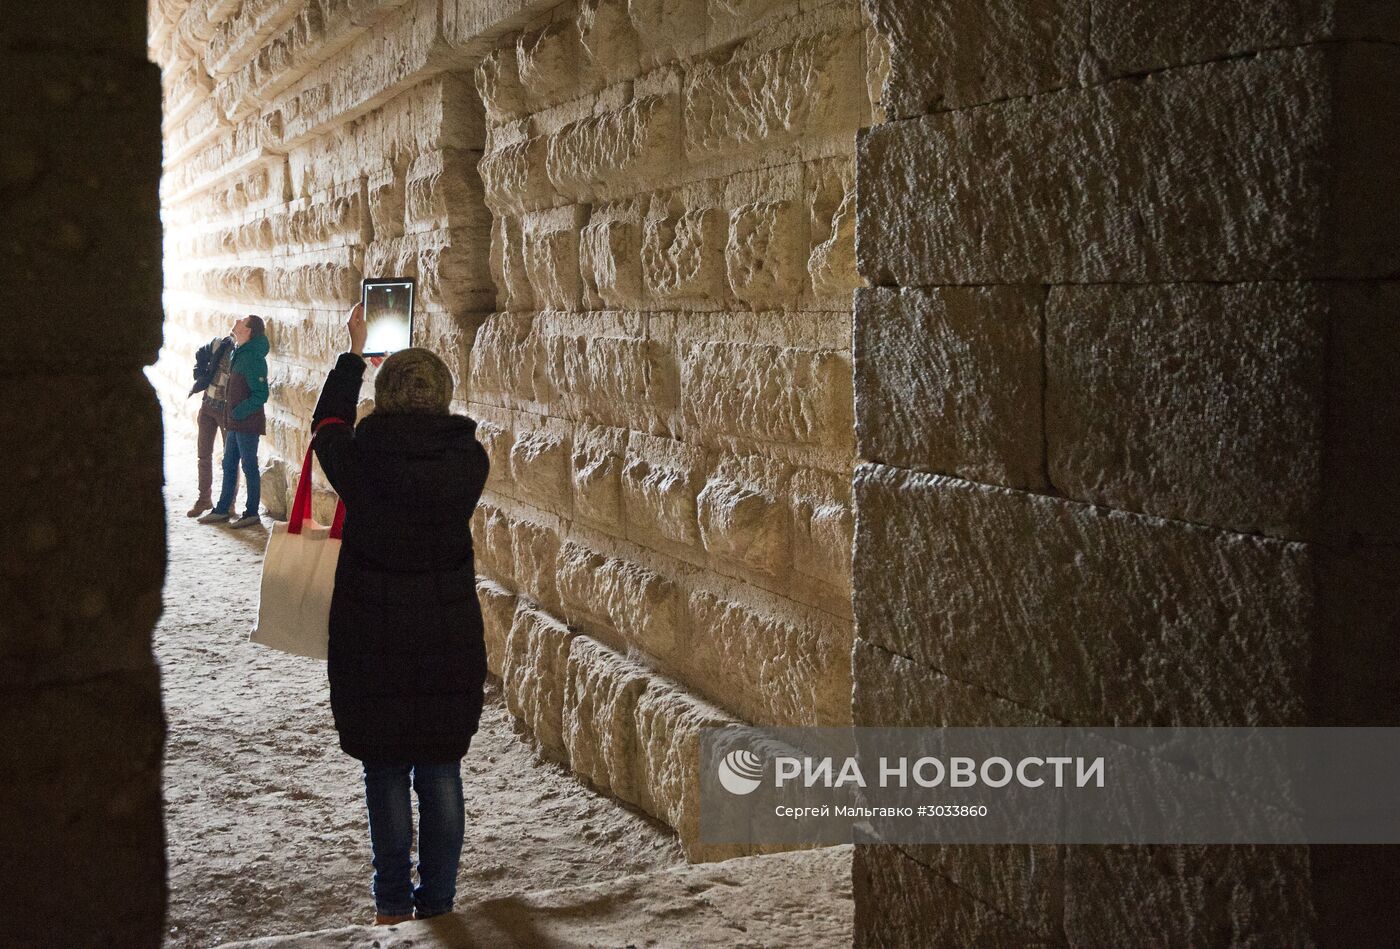 Театрализованная экскурсия на 180-летие открытия Царского кургана в Крыму